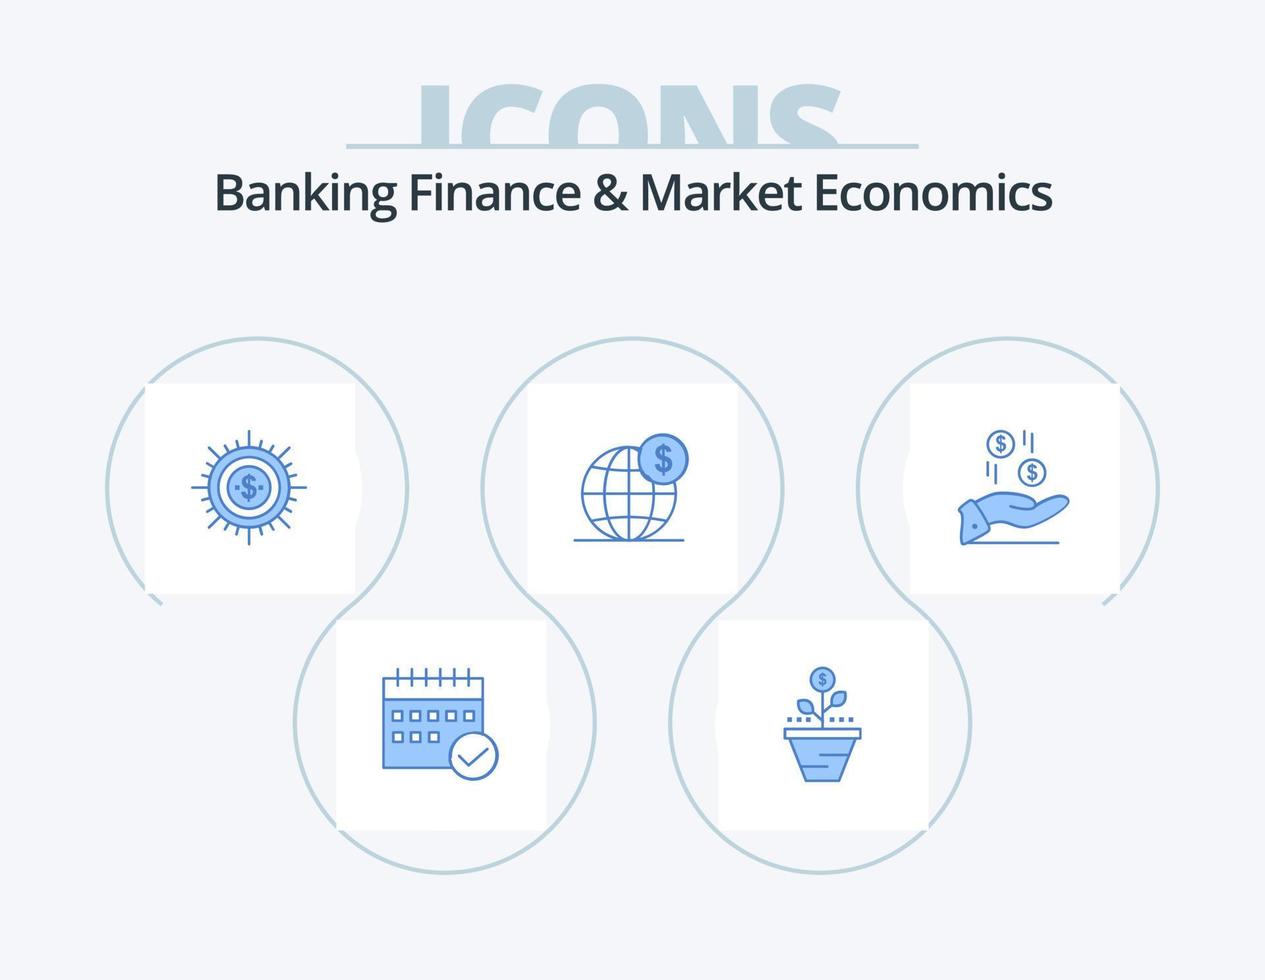 banque finance et économie de marché pack d'icônes bleues 5 conception d'icônes. espèces. argent. entreprise. augmenter. croissance vecteur